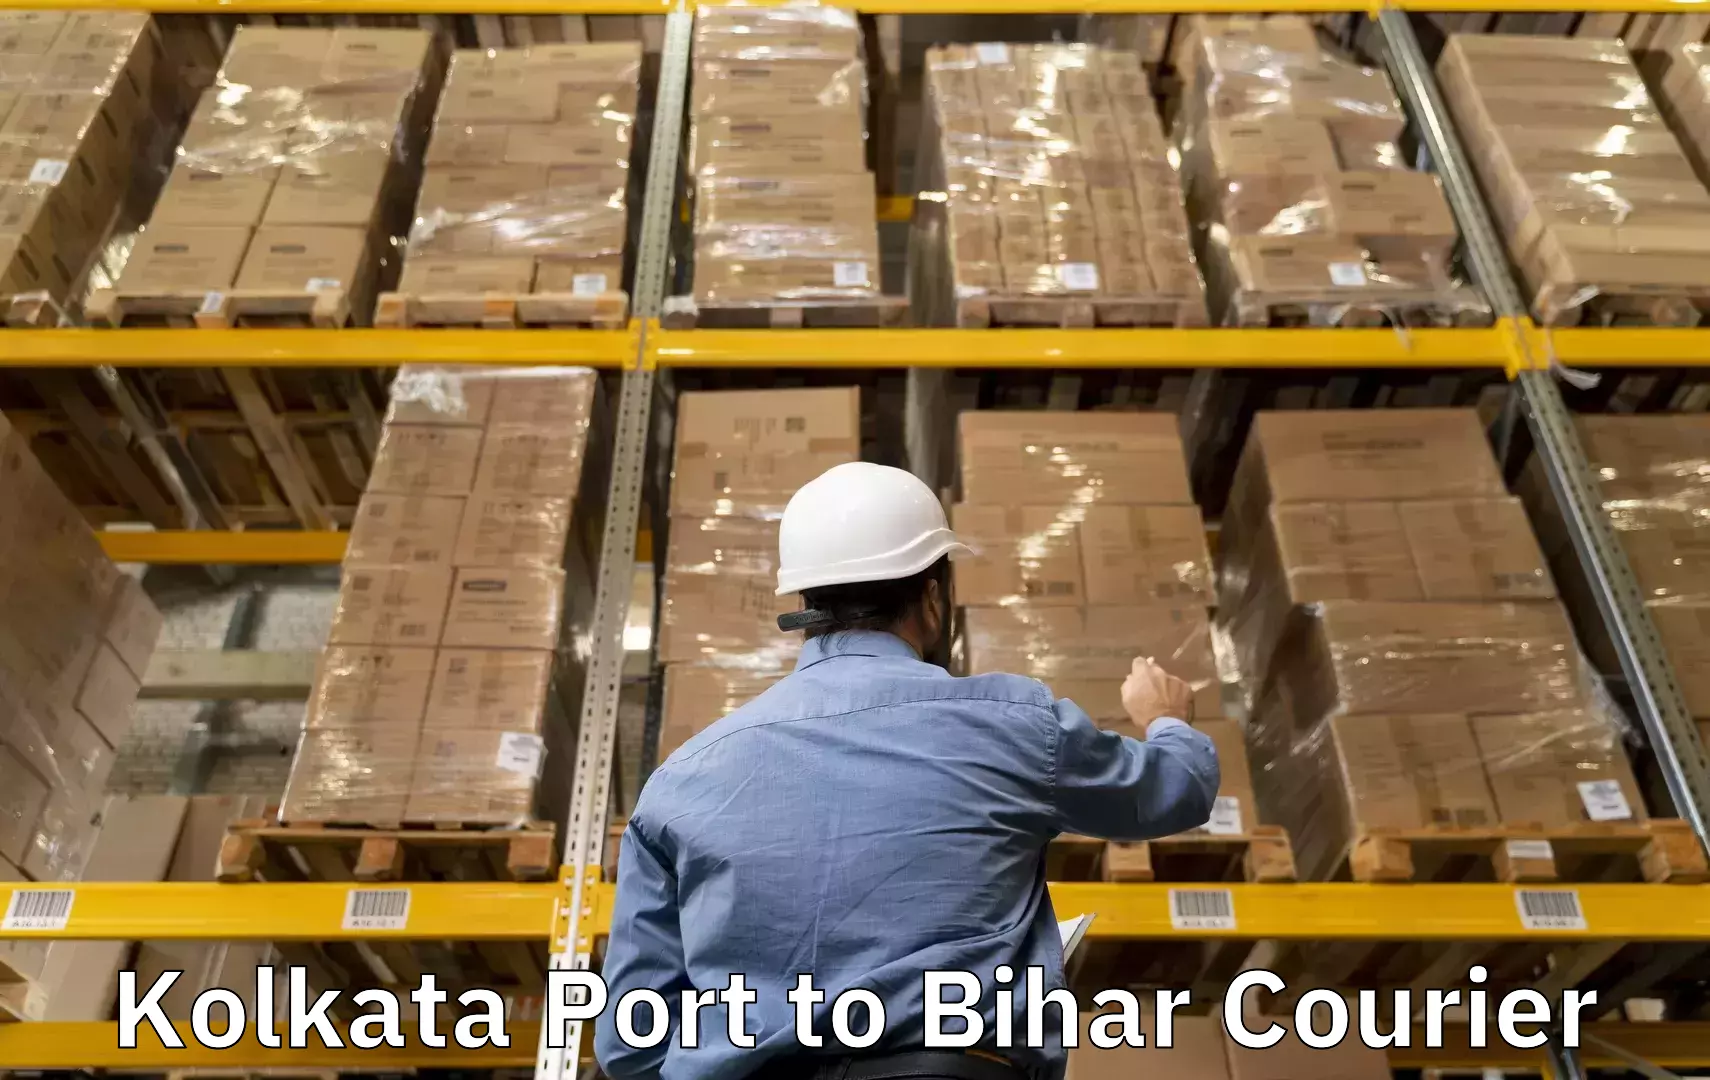 Door-to-door baggage service in Kolkata Port to Daudnagar